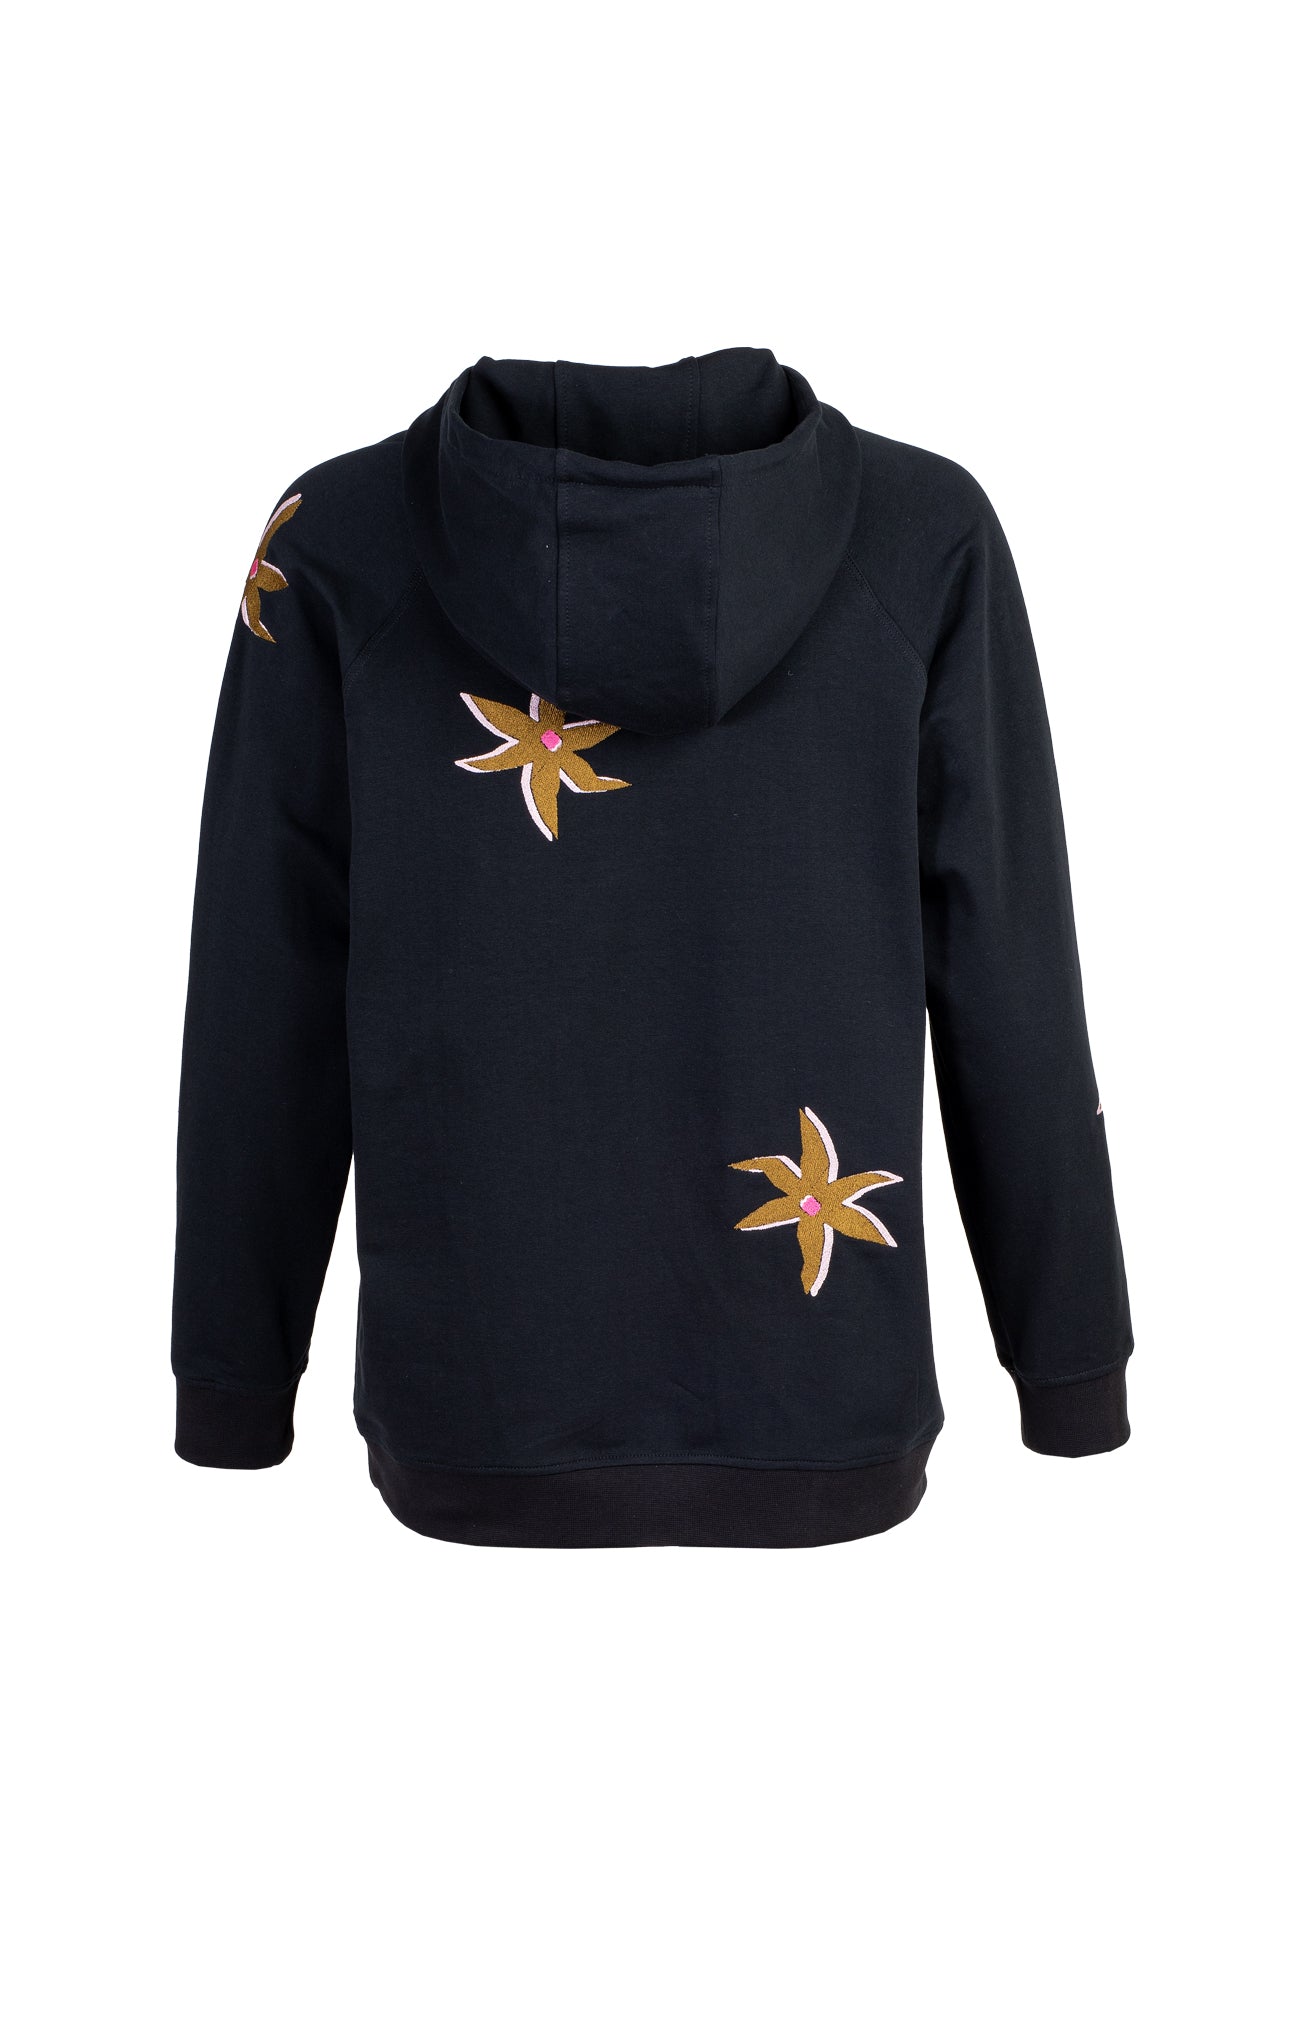 KEKES Embroidered Sweatshirt 'Starflower Black'